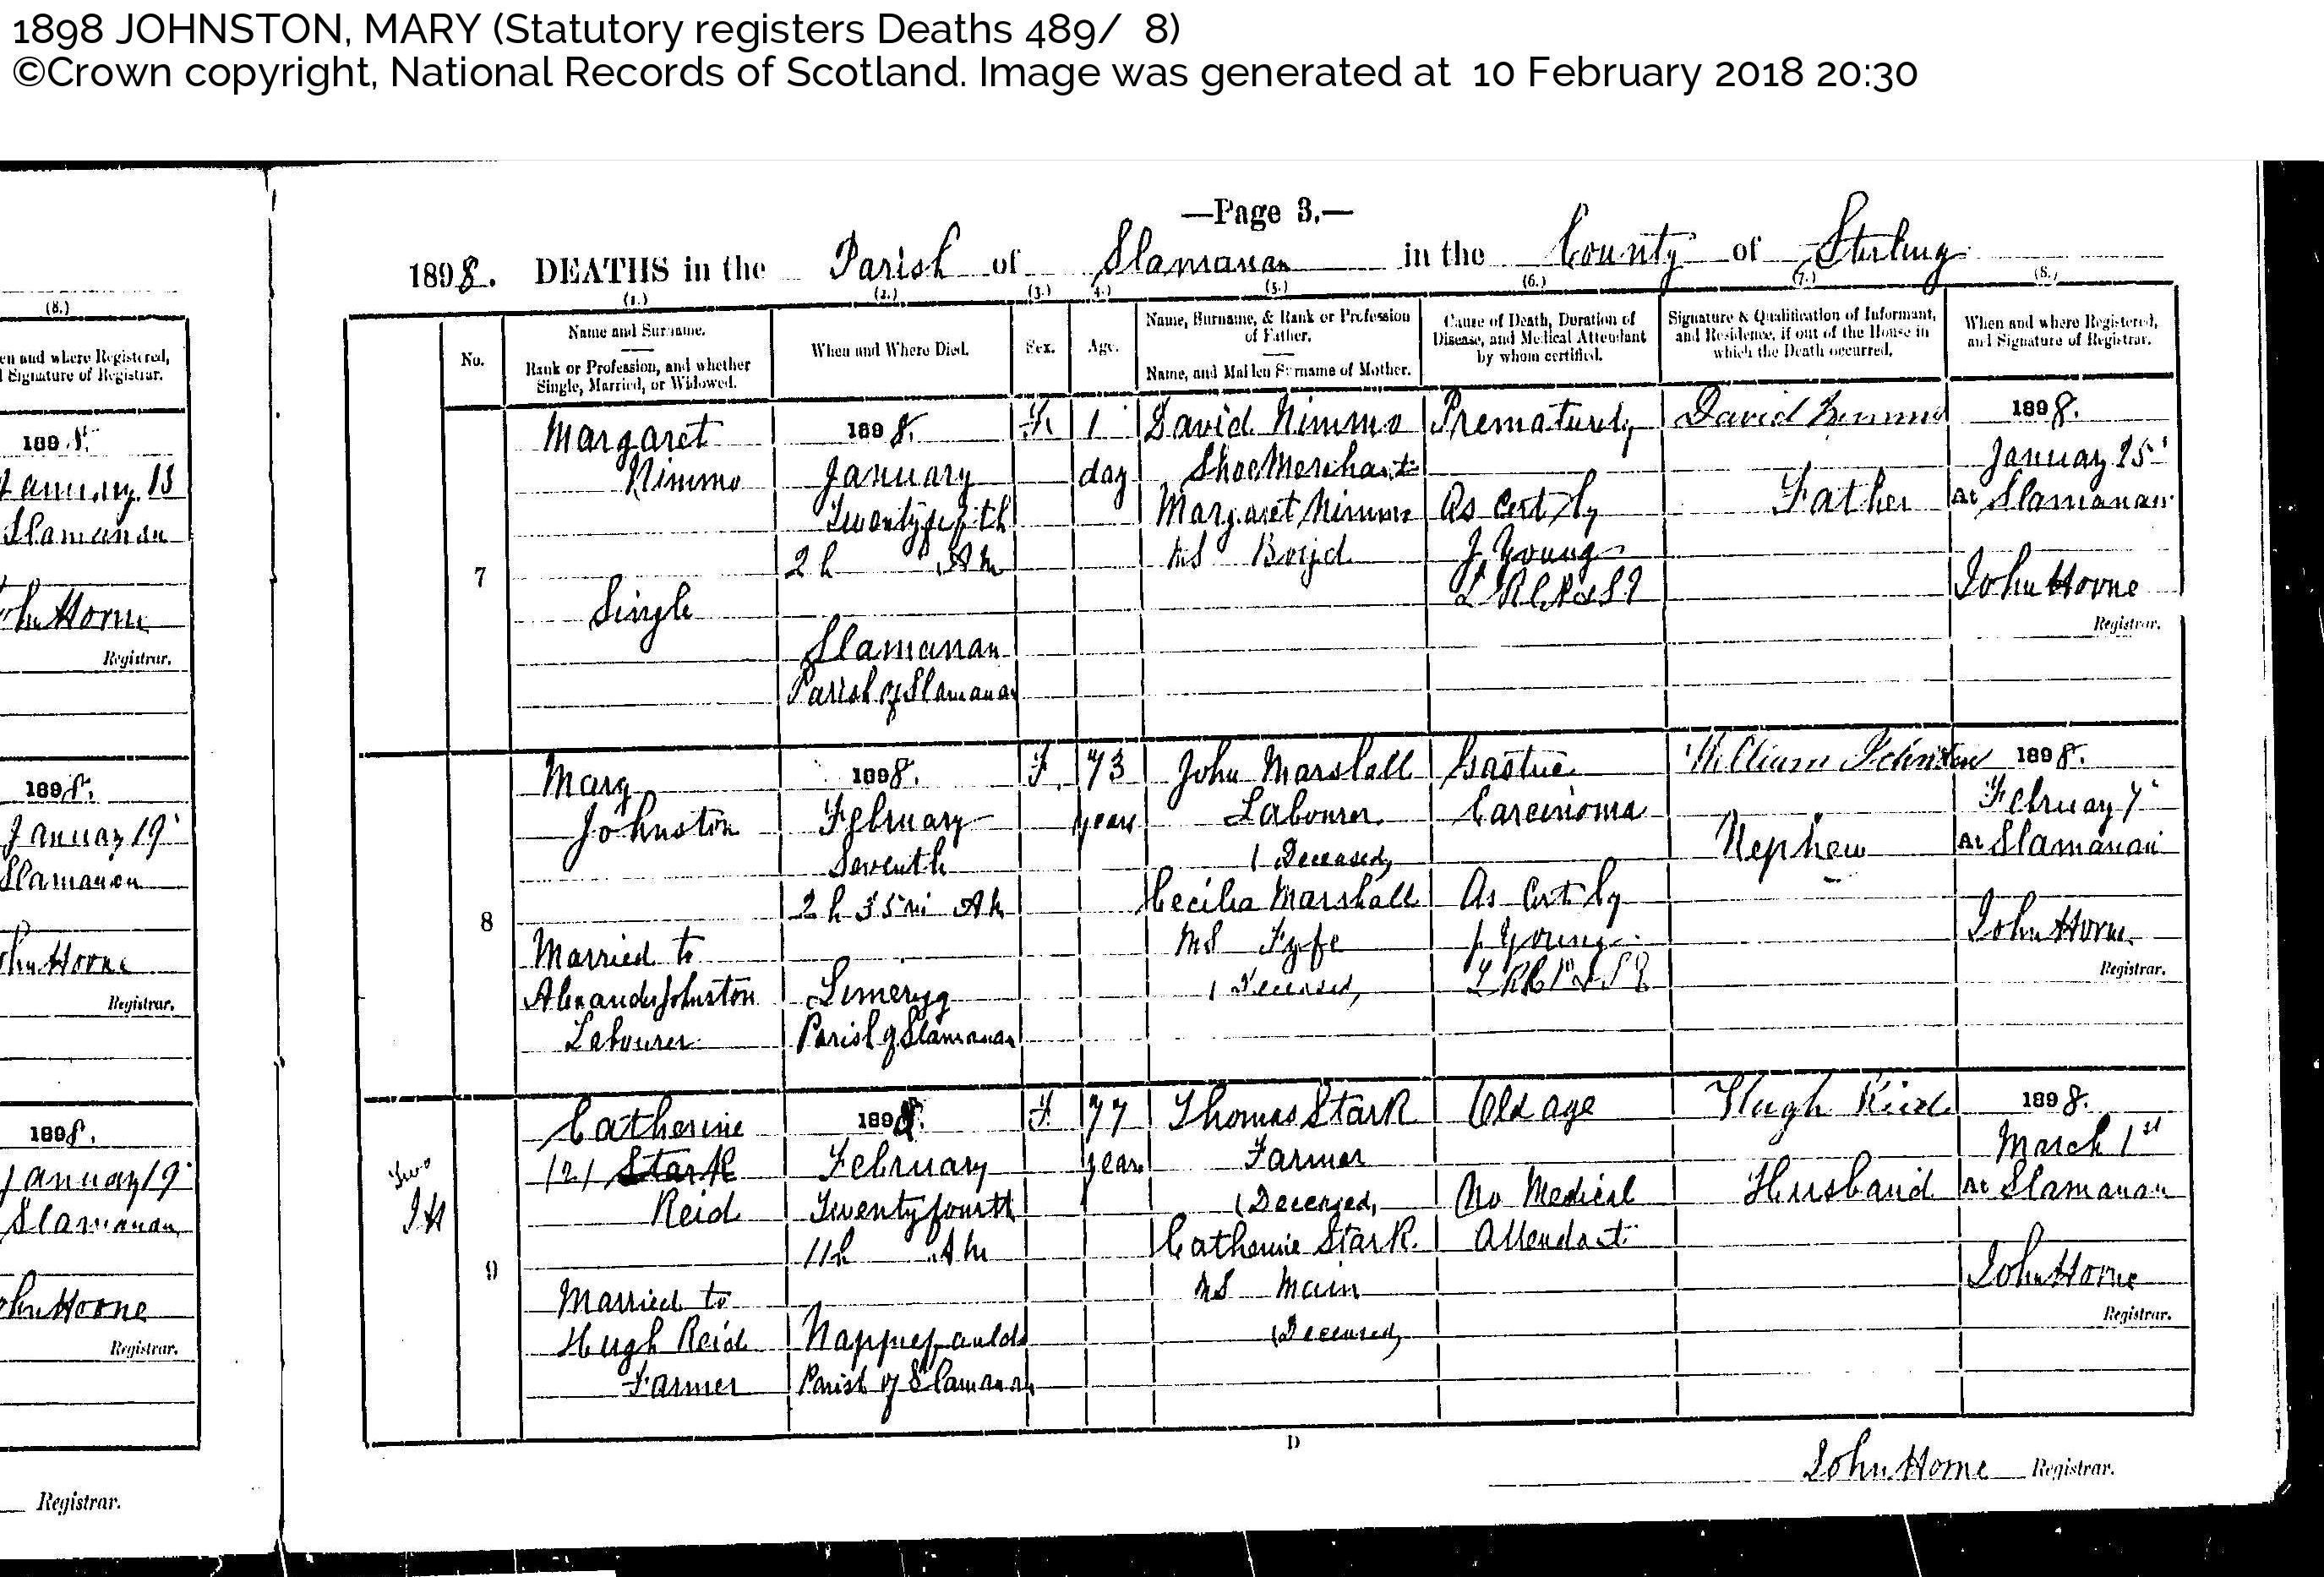 MaryMarshall(Johnston)_D1898 Limerigg Slamannan, February 7, 1898, Linked To: <a href='profiles/i612.html' >Mary Marshall</a> and <a href='profiles/i611.html' >Alexander Johnstone</a>